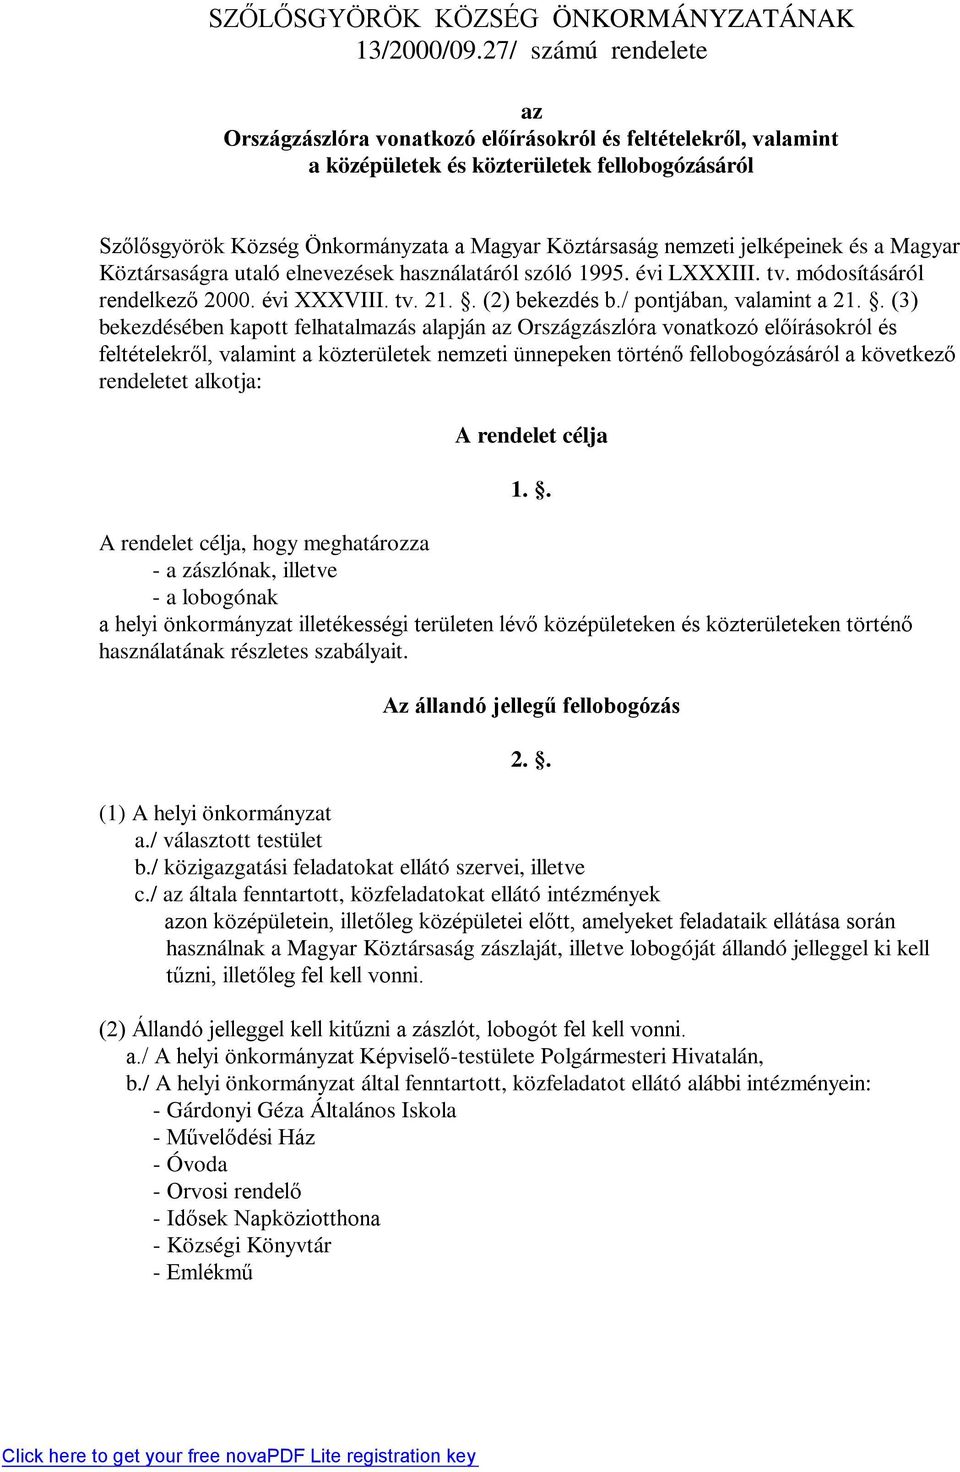 jelképeinek és a Magyar Köztársaságra utaló elnevezések használatáról szóló 1995. évi LXXXIII. tv. módosításáról rendelkező 2000. évi XXXVIII. tv. 21.. (2) bekezdés b./ pontjában, valamint a 21.